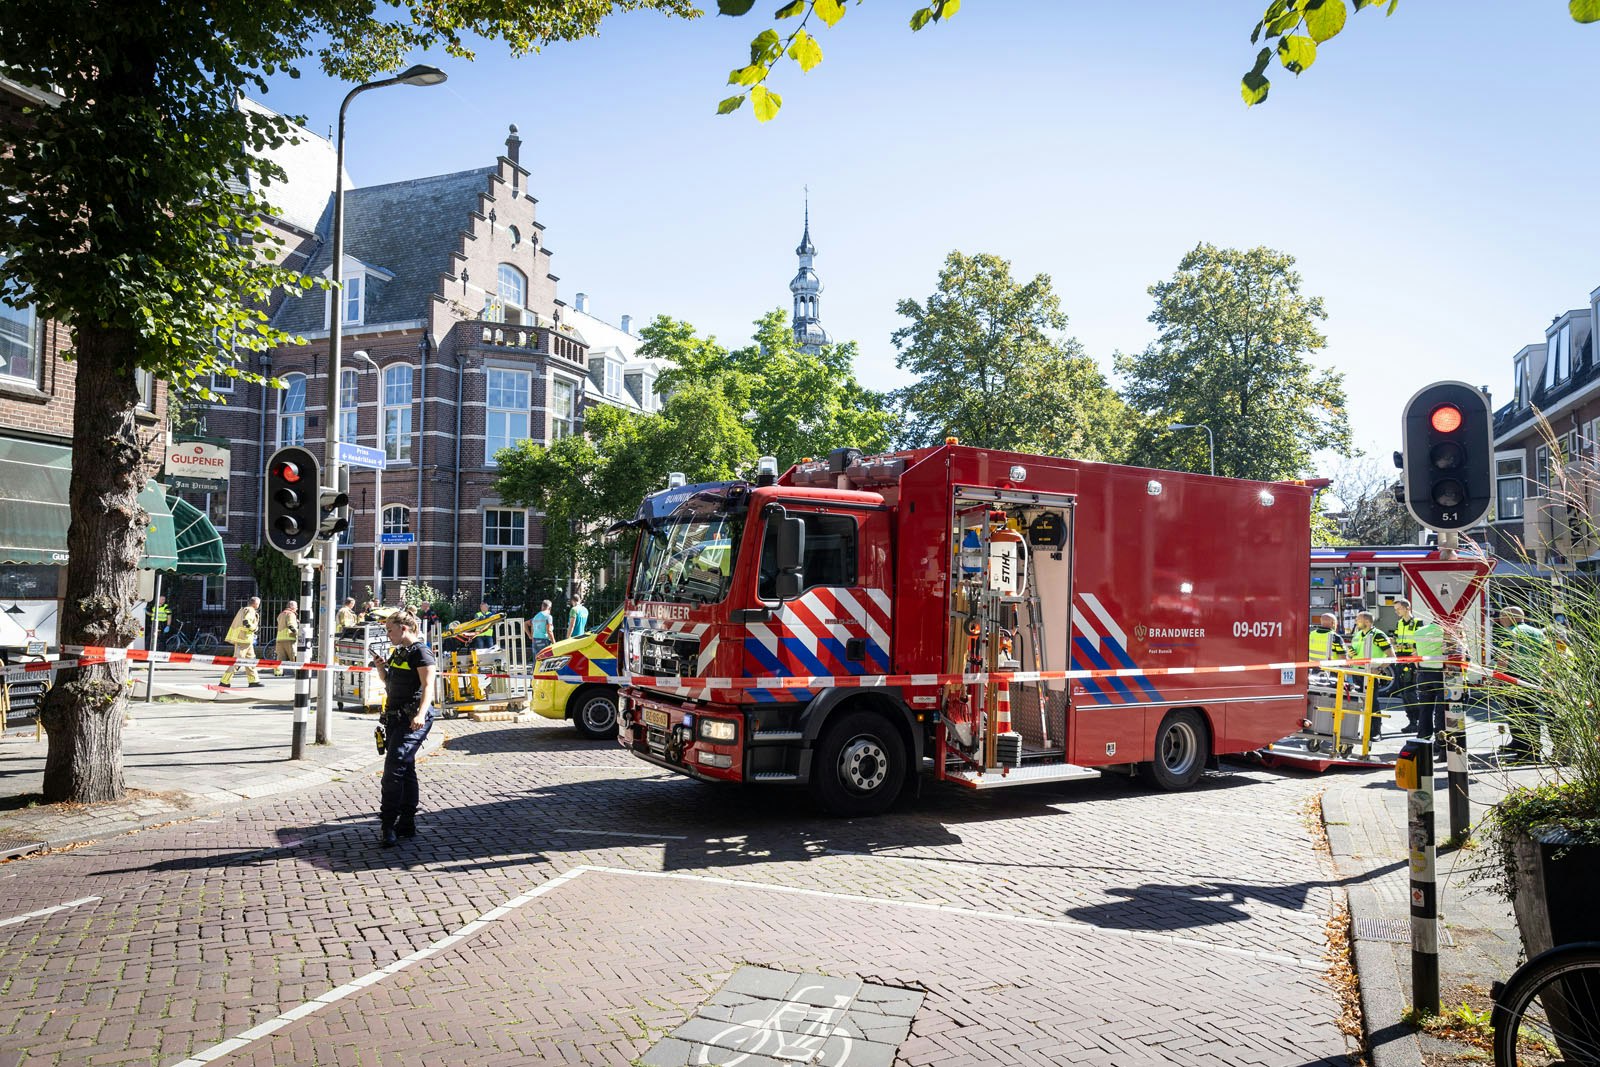 Politie Utrecht zoekt omstanders die eerste hulp verleenden bij zwaar ongeluk met vrachtwagen op Jan van Scorelstraat.